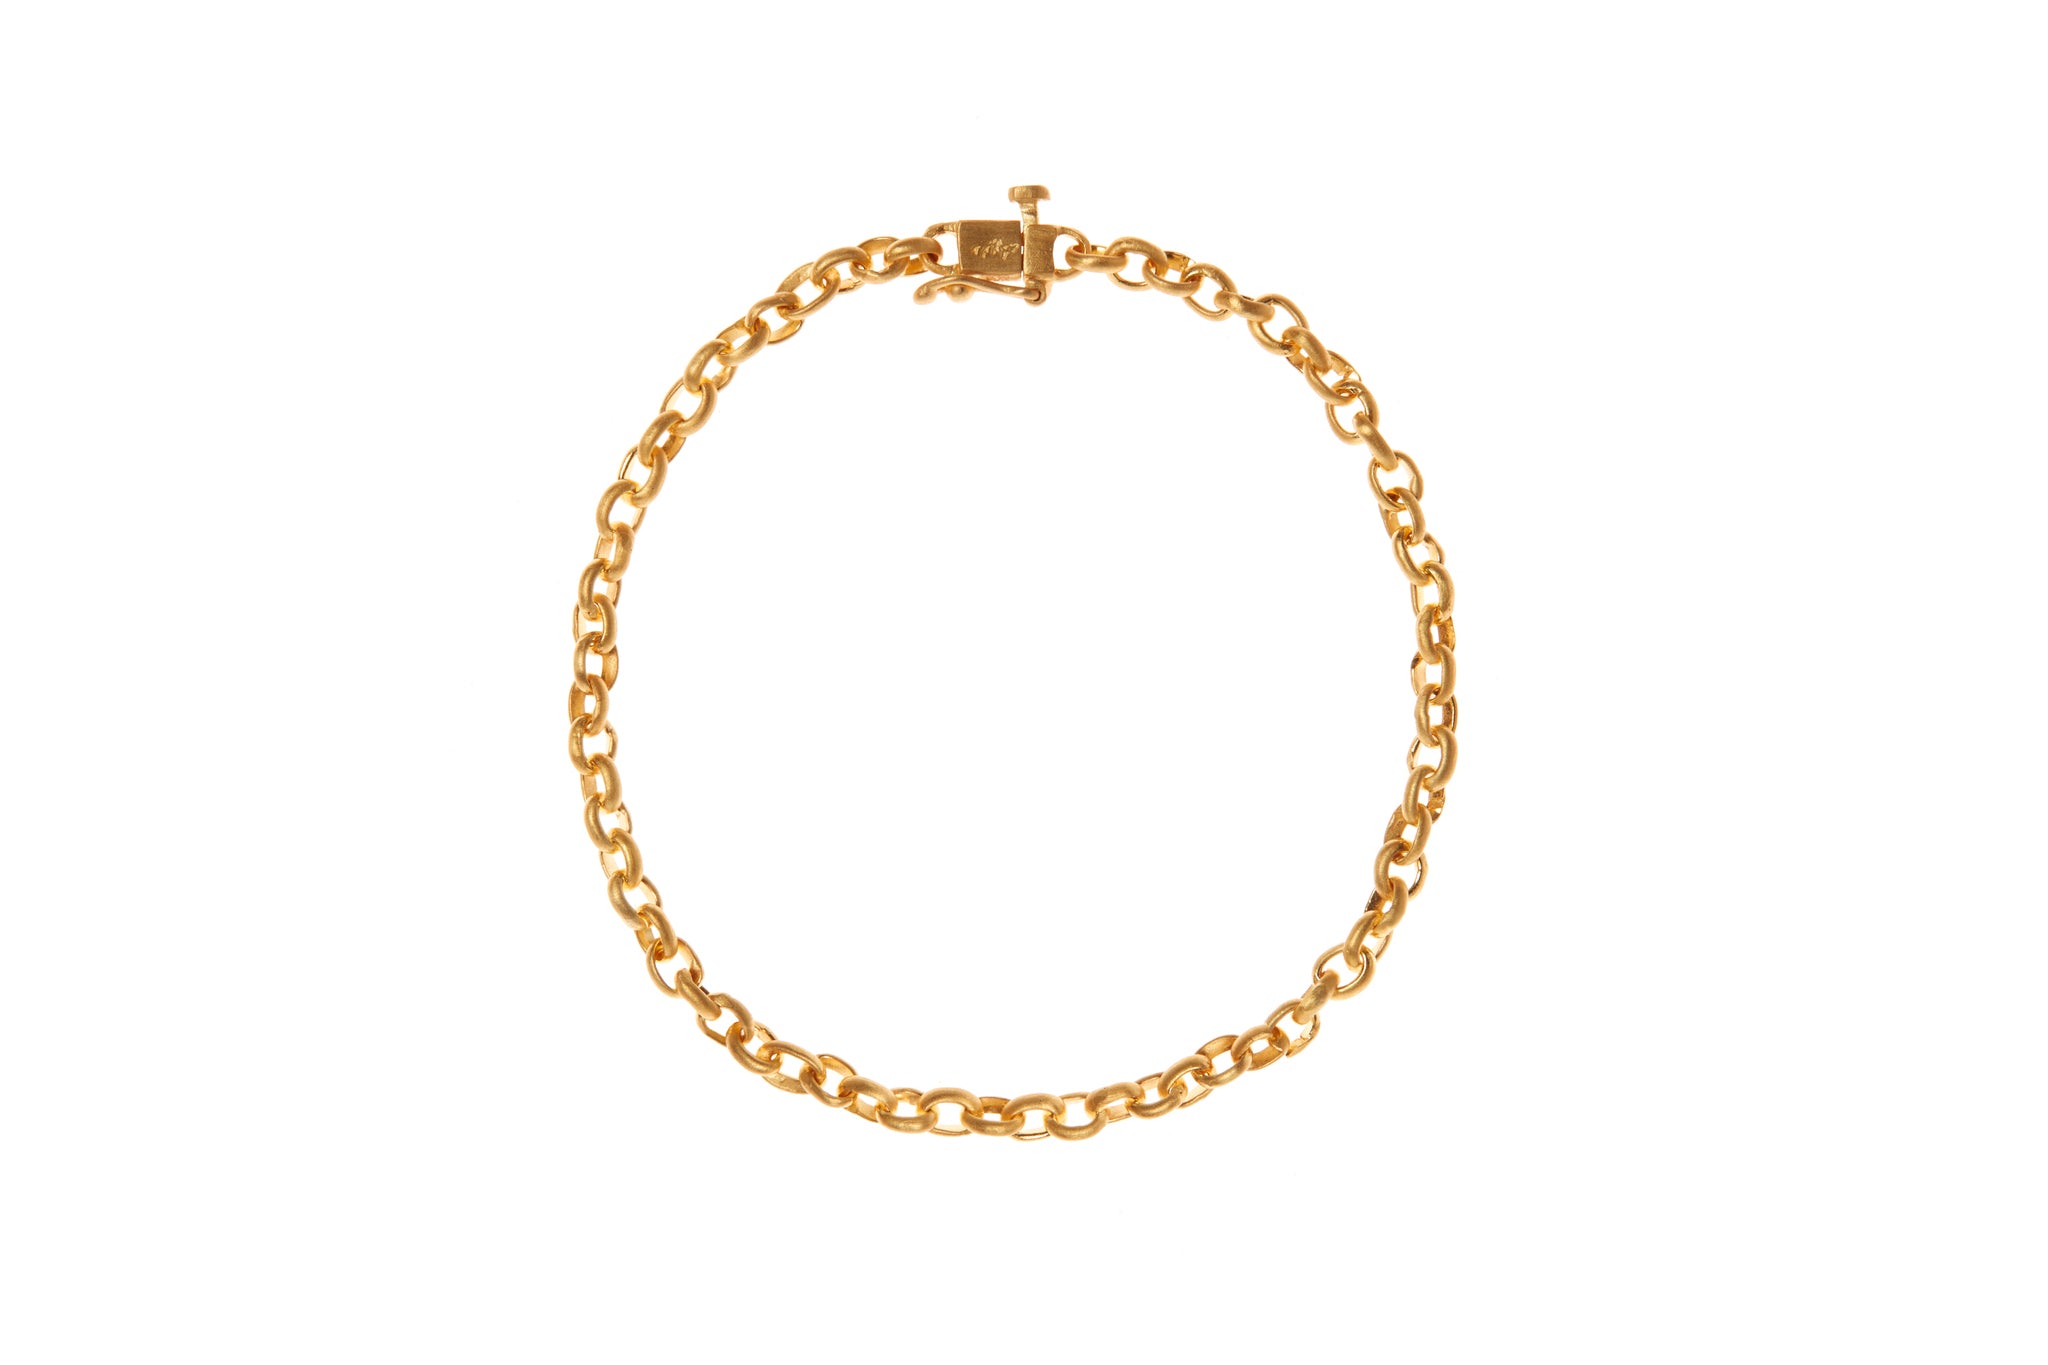 darius jewels fairy chain bracelet 18k yellow gold darius khonsary